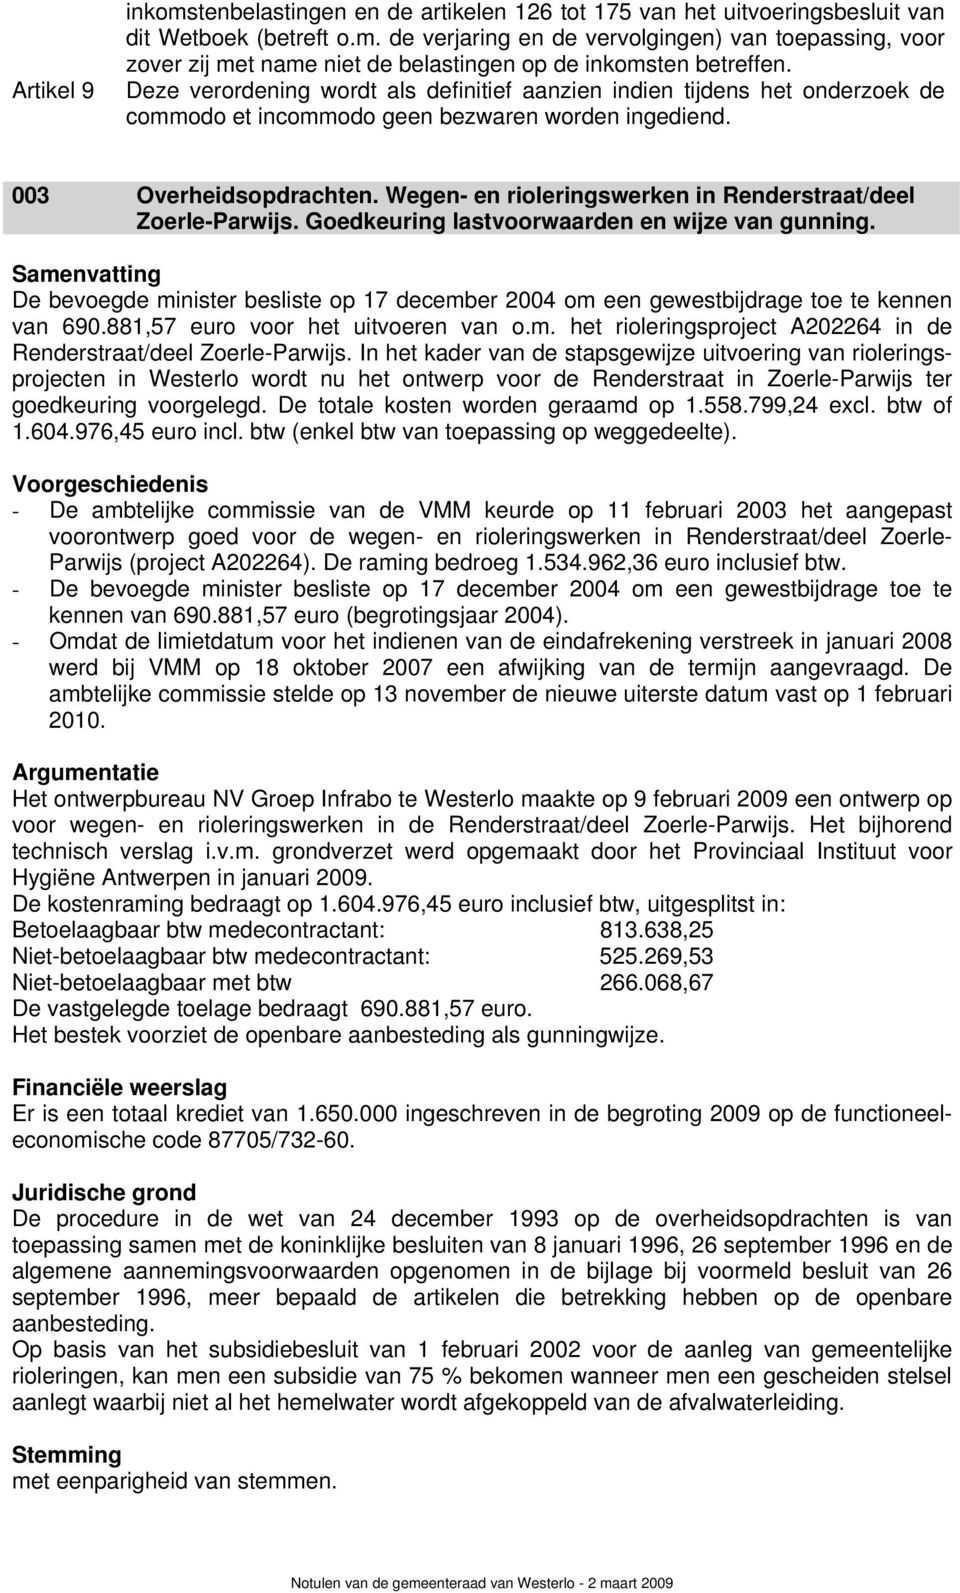 Wegen- en rioleringswerken in Renderstraat/deel Zoerle-Parwijs. Goedkeuring lastvoorwaarden en wijze van gunning.